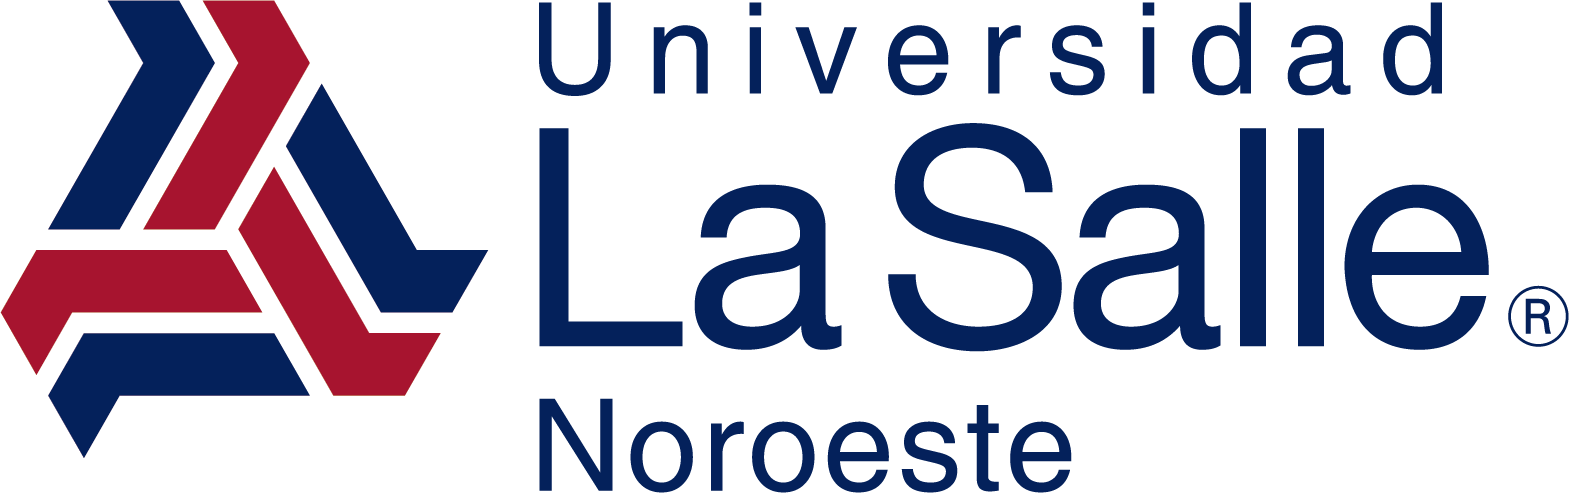 Logotipo de ULSA Noroeste, Alma Mater de Ludens